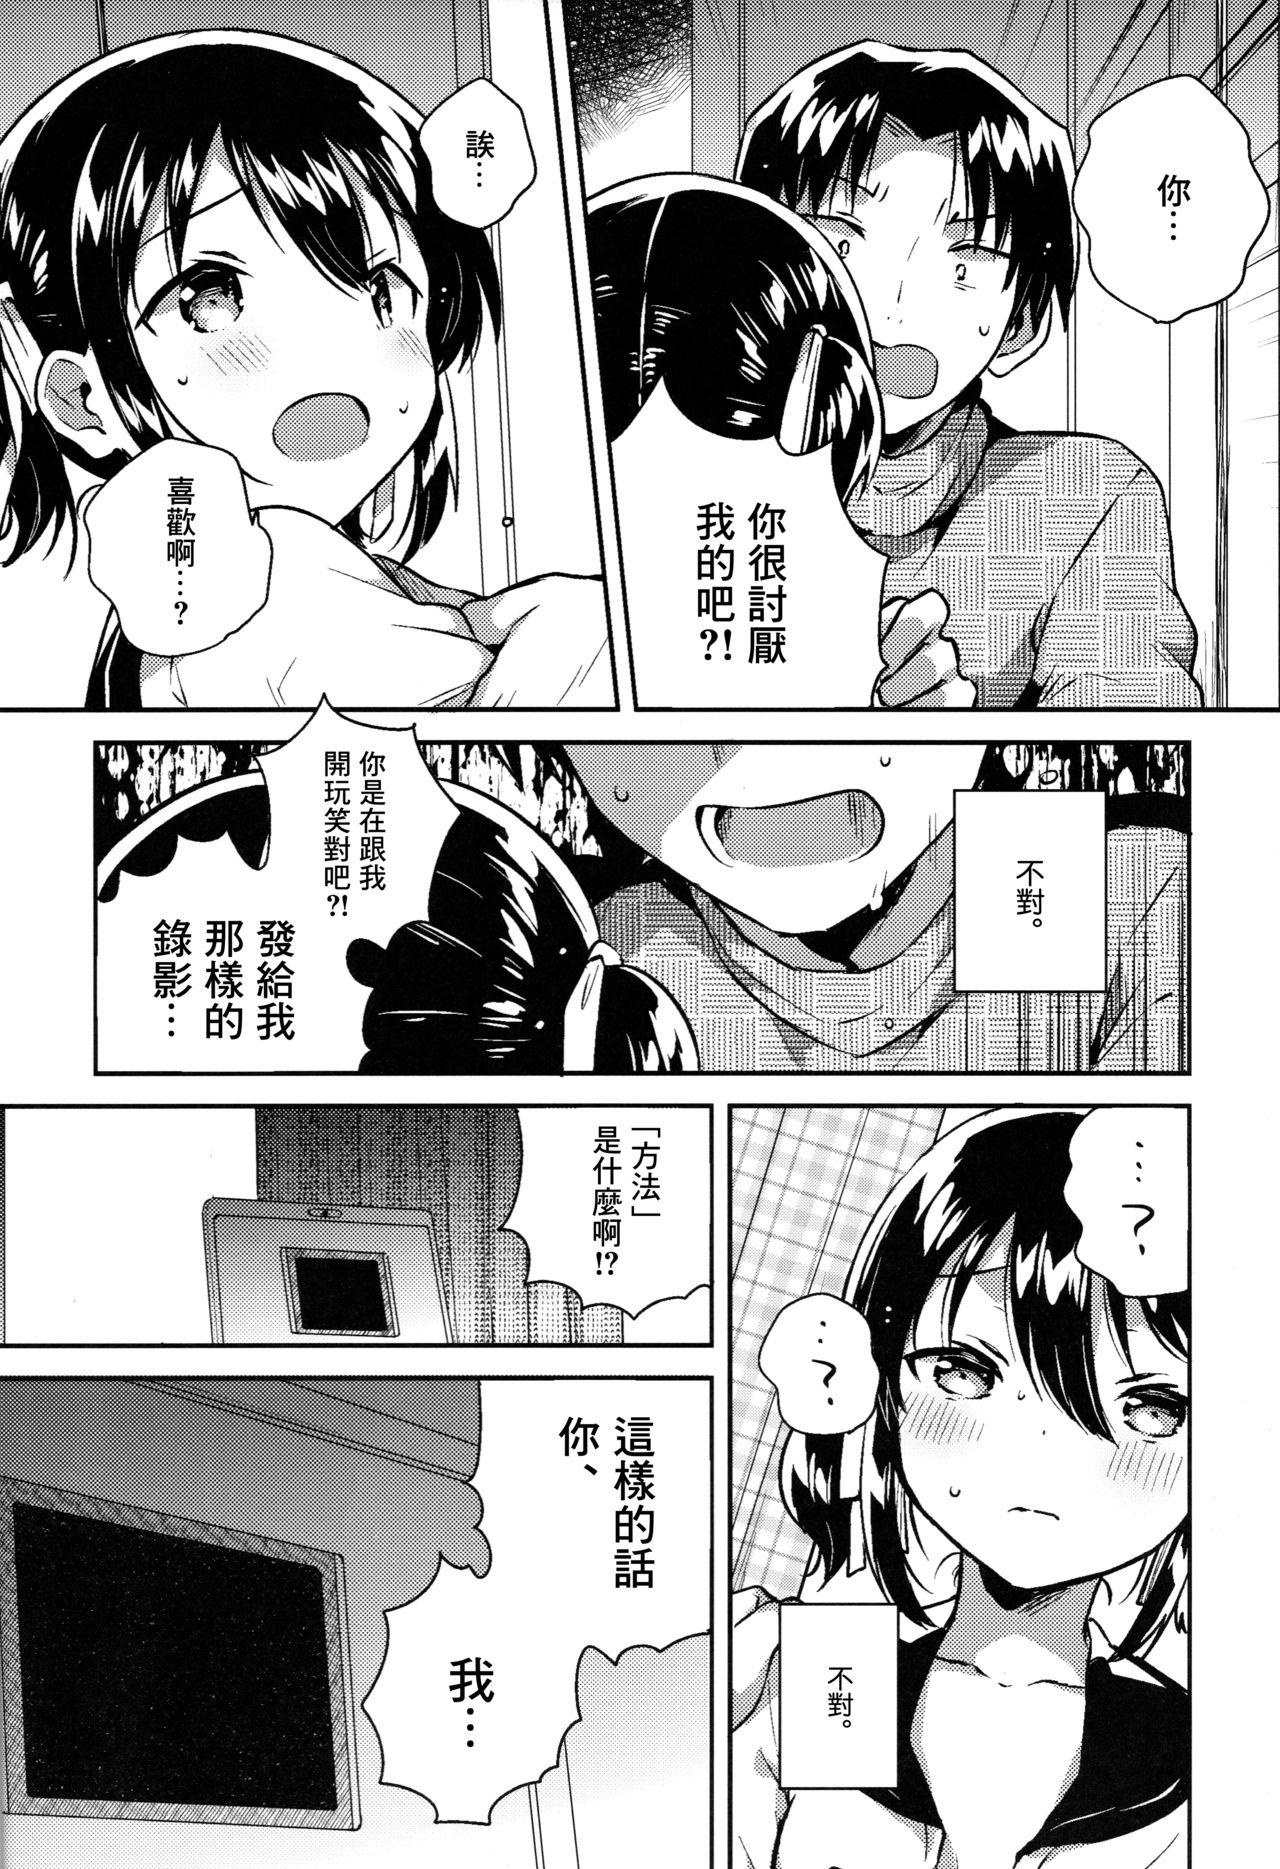 No Condom Imouto wa Kakezan ga Dekiru - Original Work - Page 12